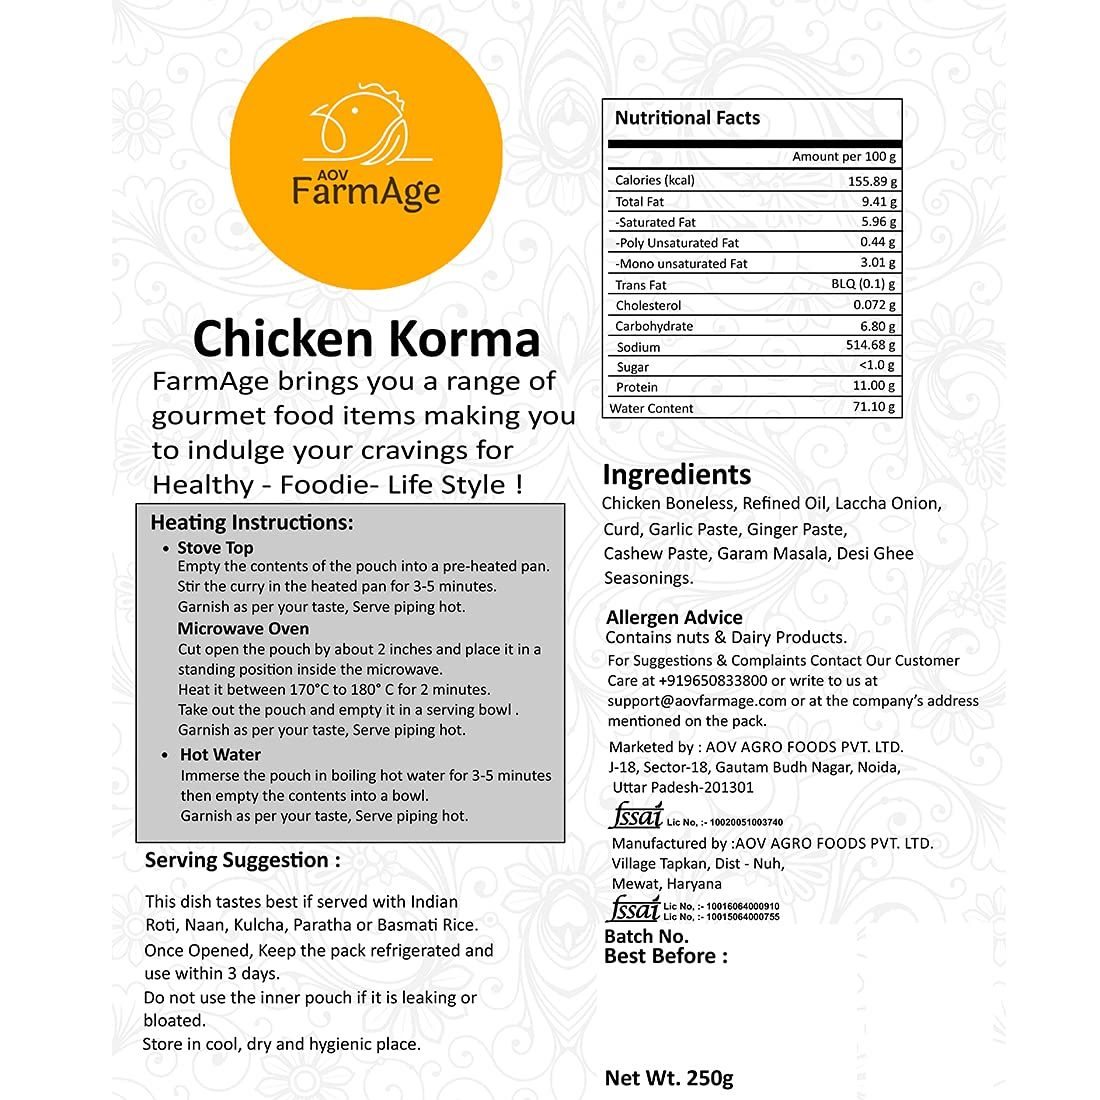 AOV Farmage Chicken Korma Image